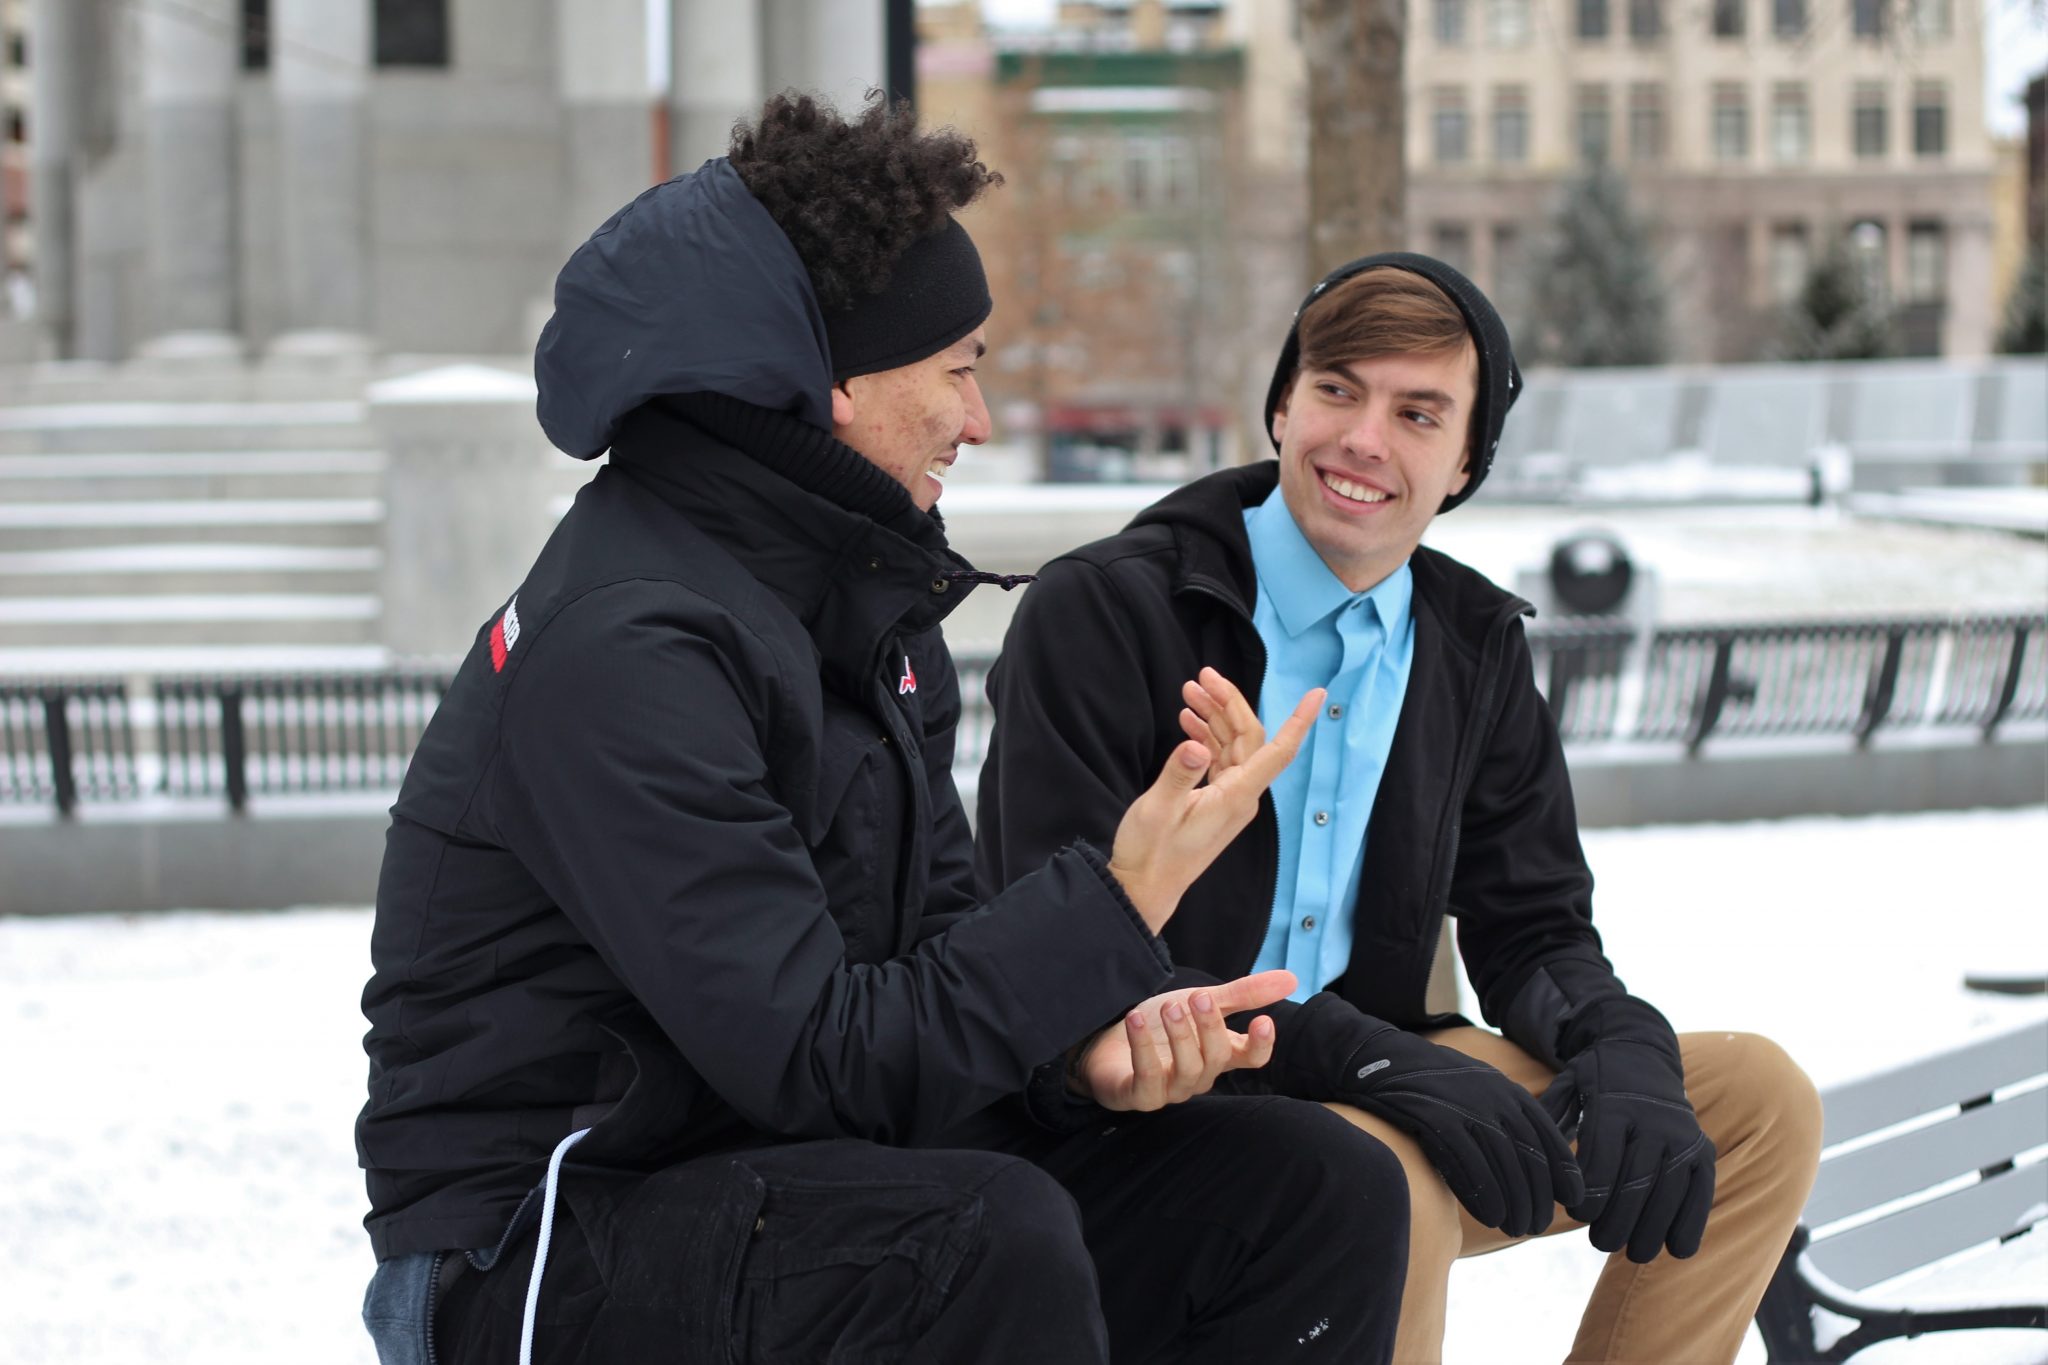 men talking outside in winter